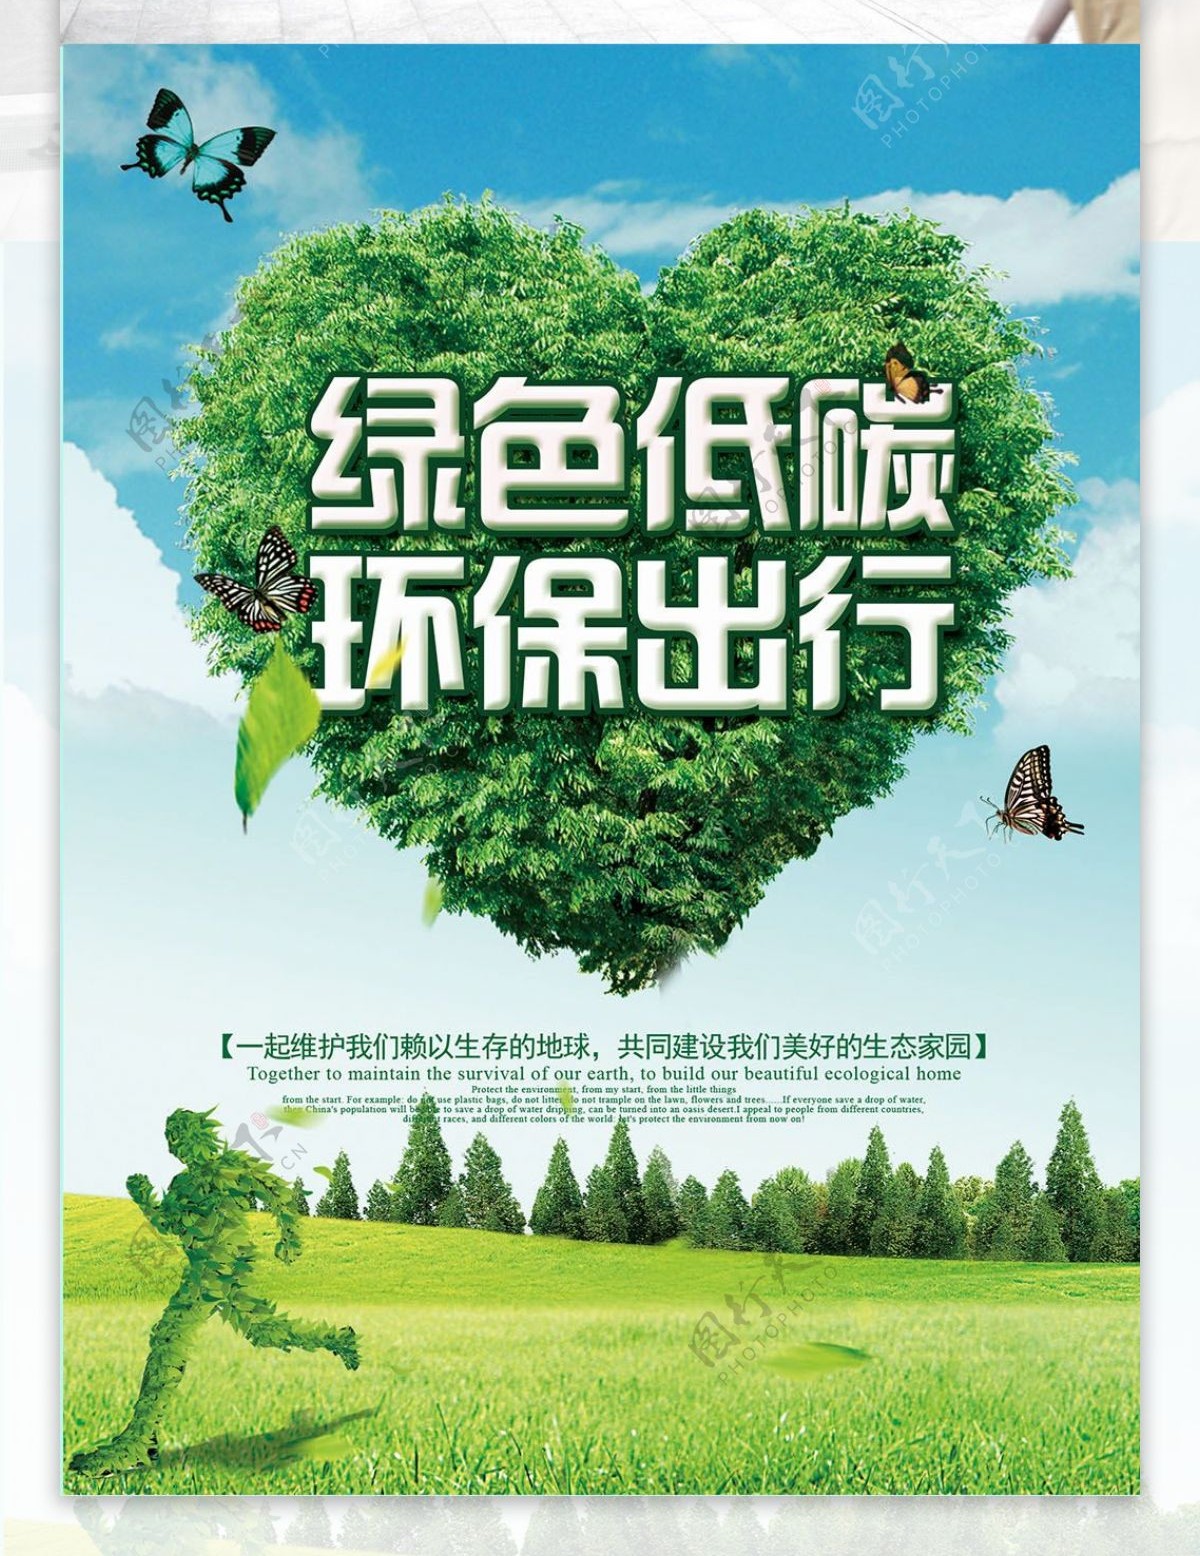 简约大气绿色环保出行公益海报